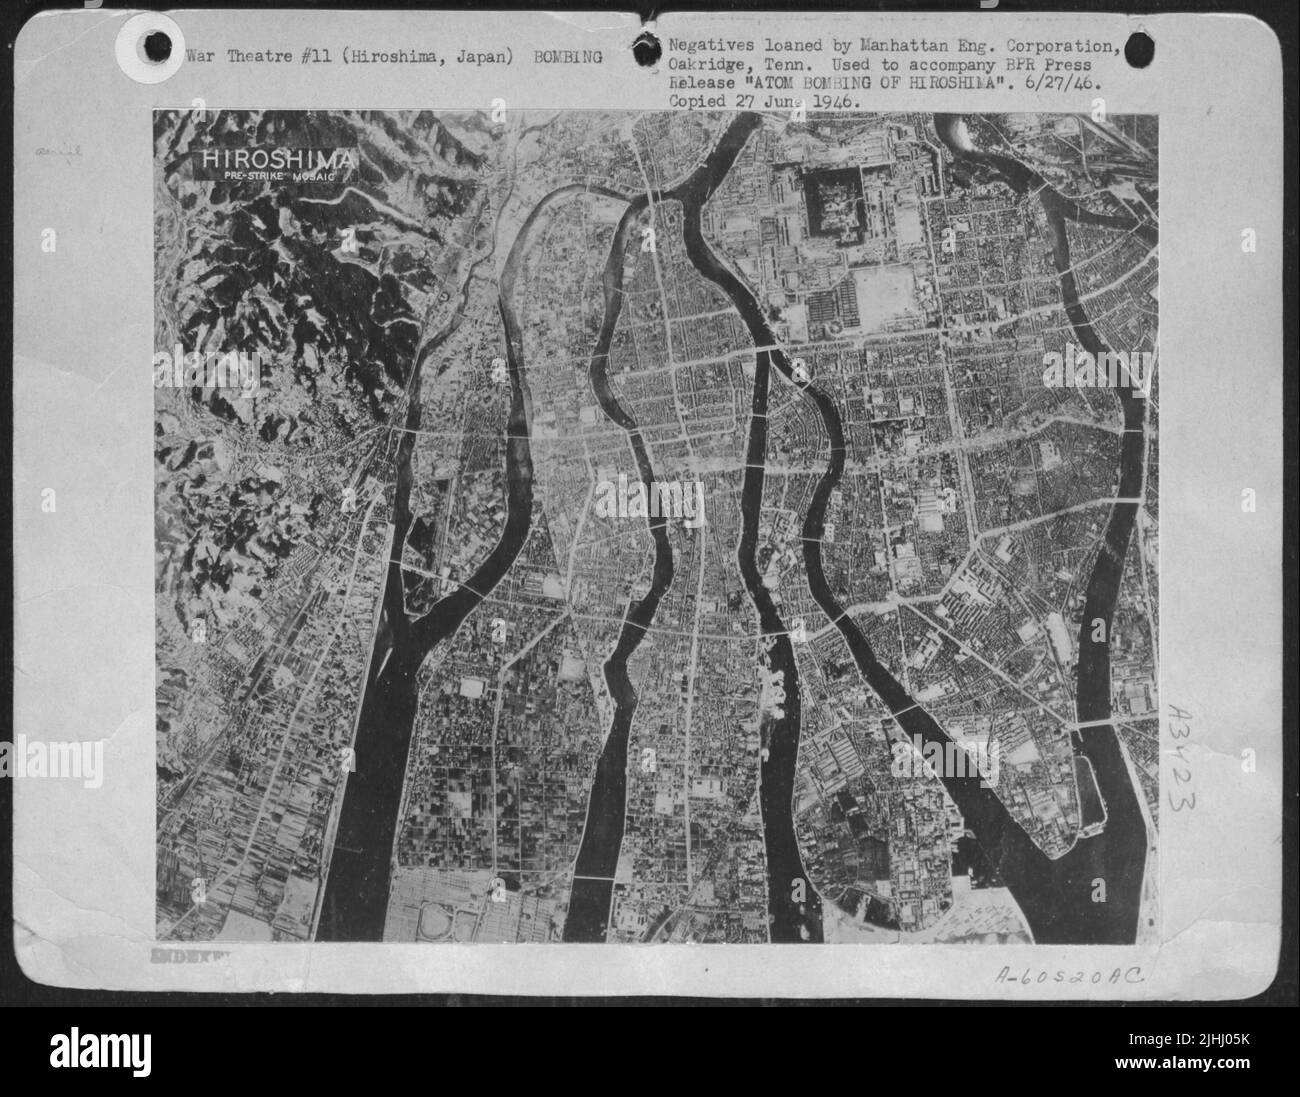 Bombe atomique d'Hiroshima. Vue aérienne d'Hiroshima avant la frappe montrant la haute densité de la zone bâtie. Les voies d'incendie dédouanées par les Japonais sont clairement visibles. Banque D'Images